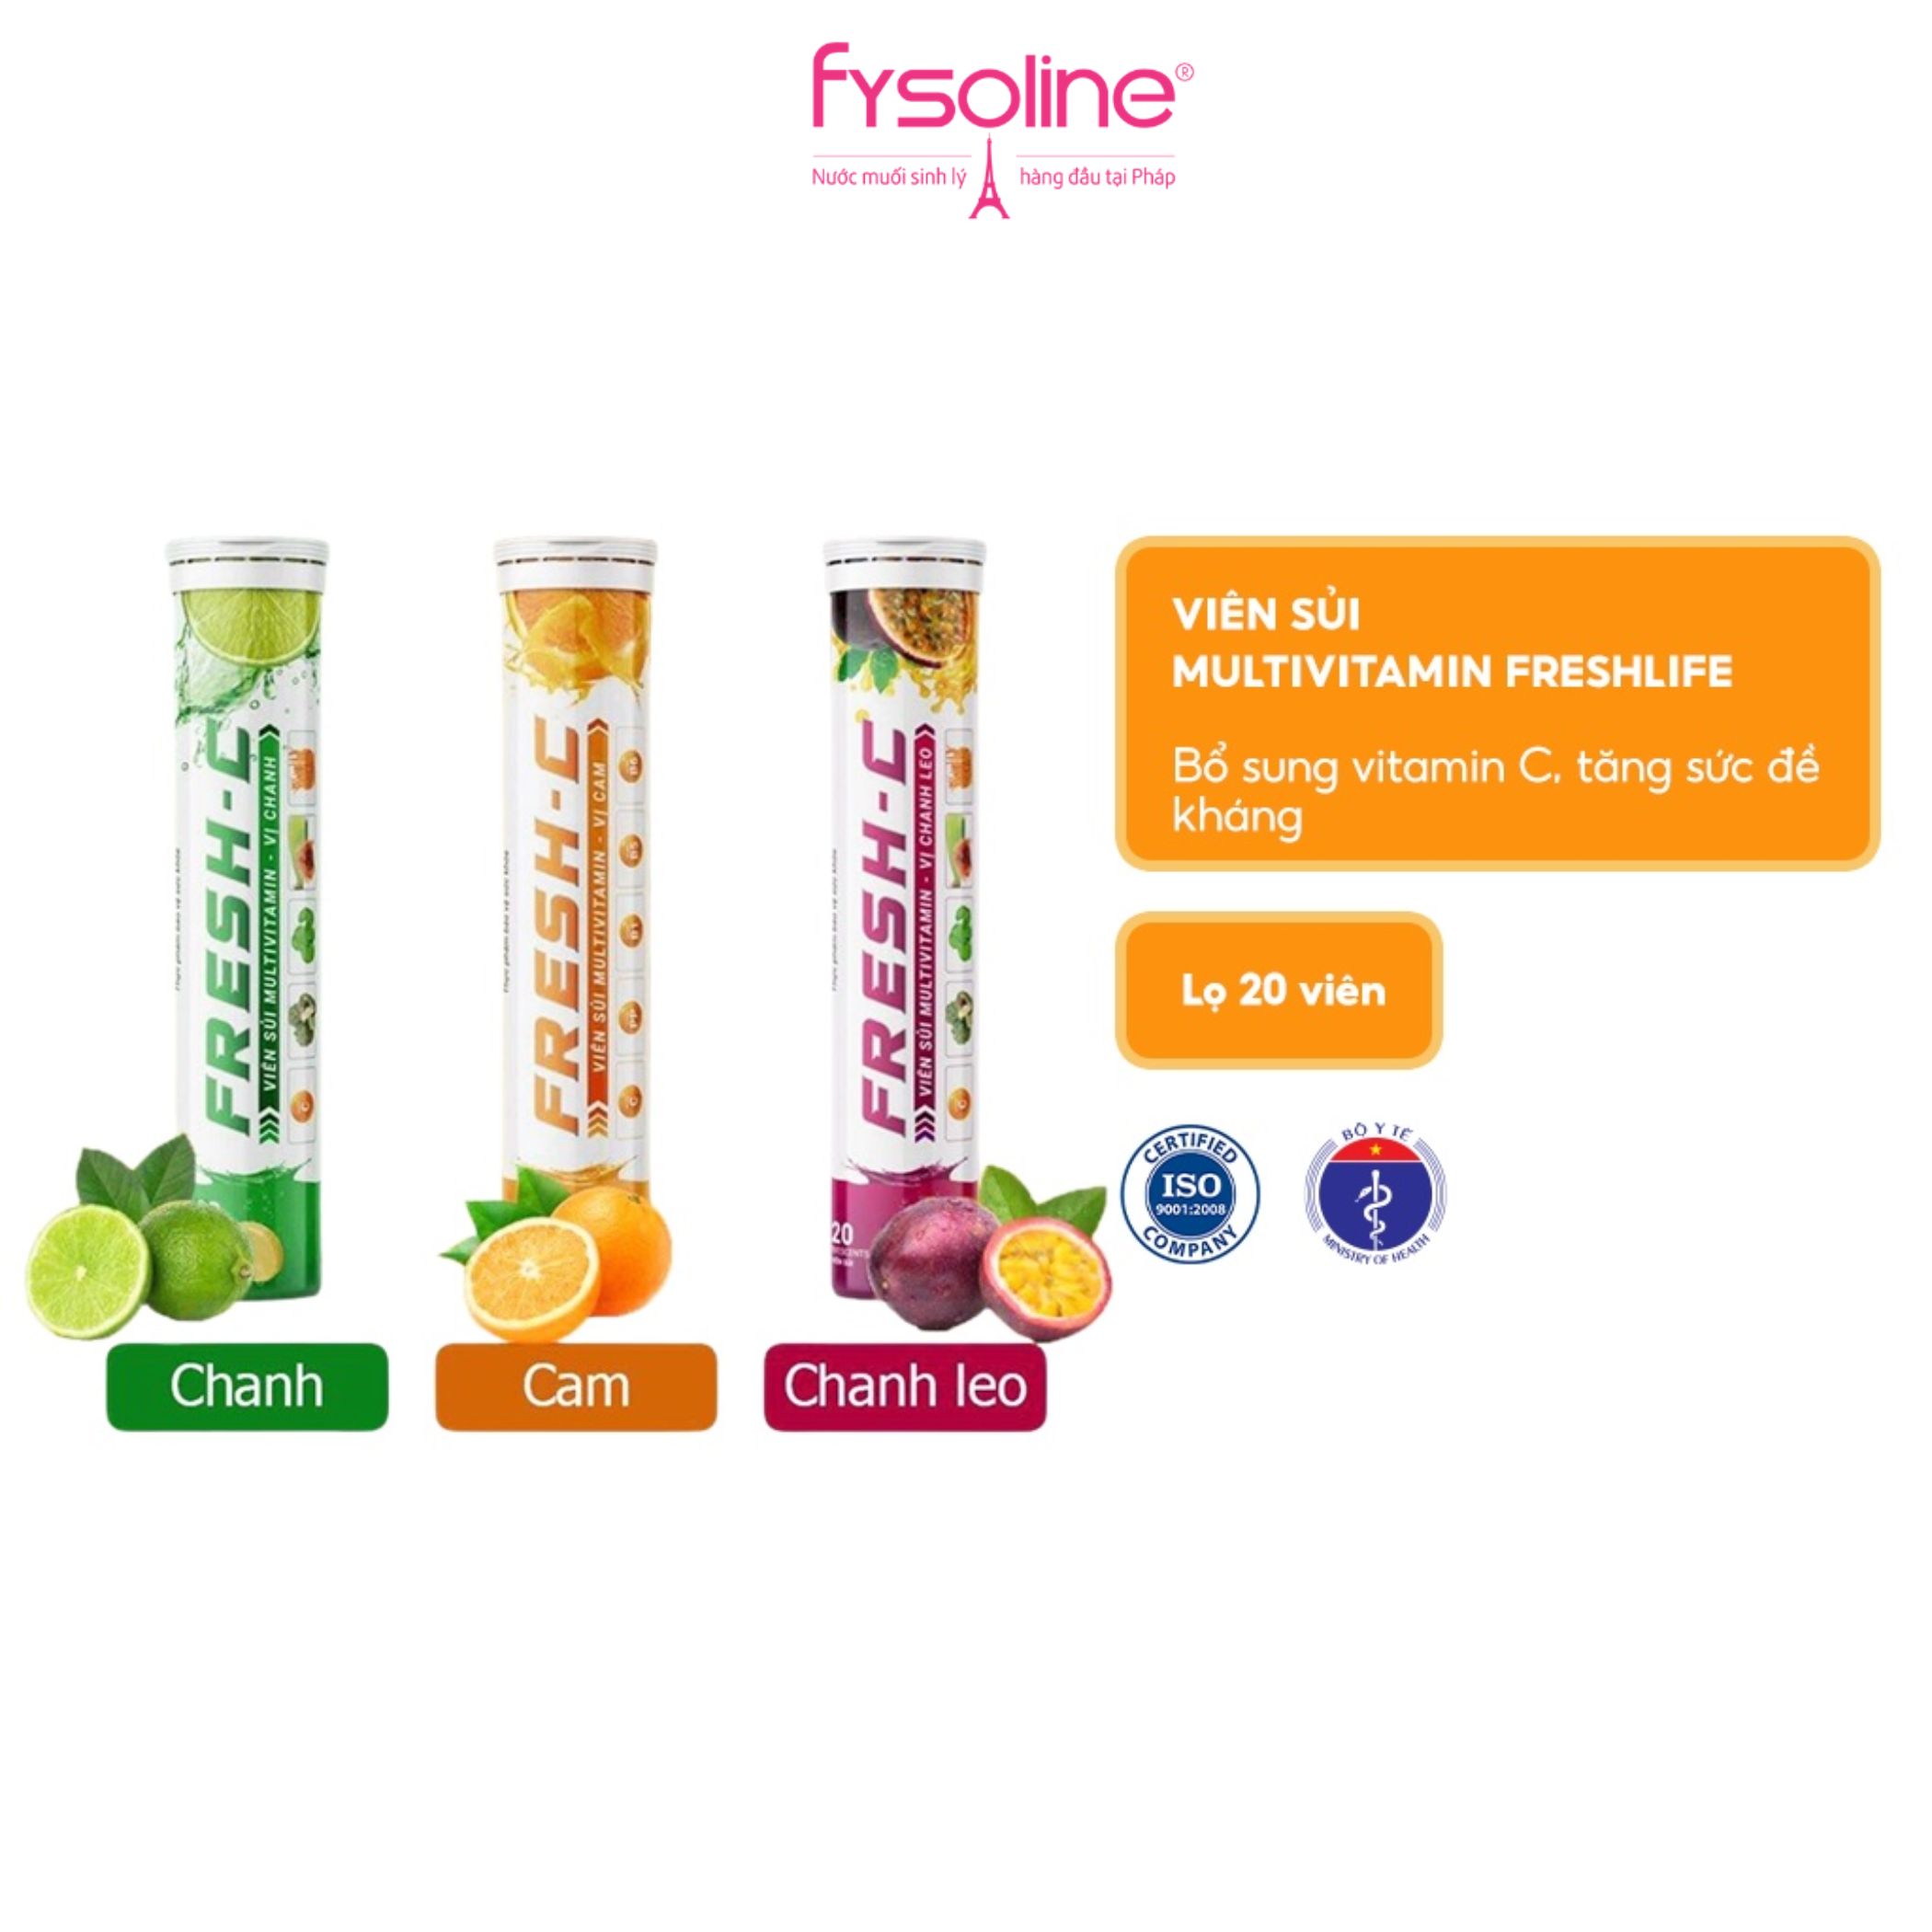 Viên sủi Multivitamin Freshlife bổ sung vitamin C, tăng cường sức đề kháng bảo vệ sức khỏe lọ 20 viên Fysoline